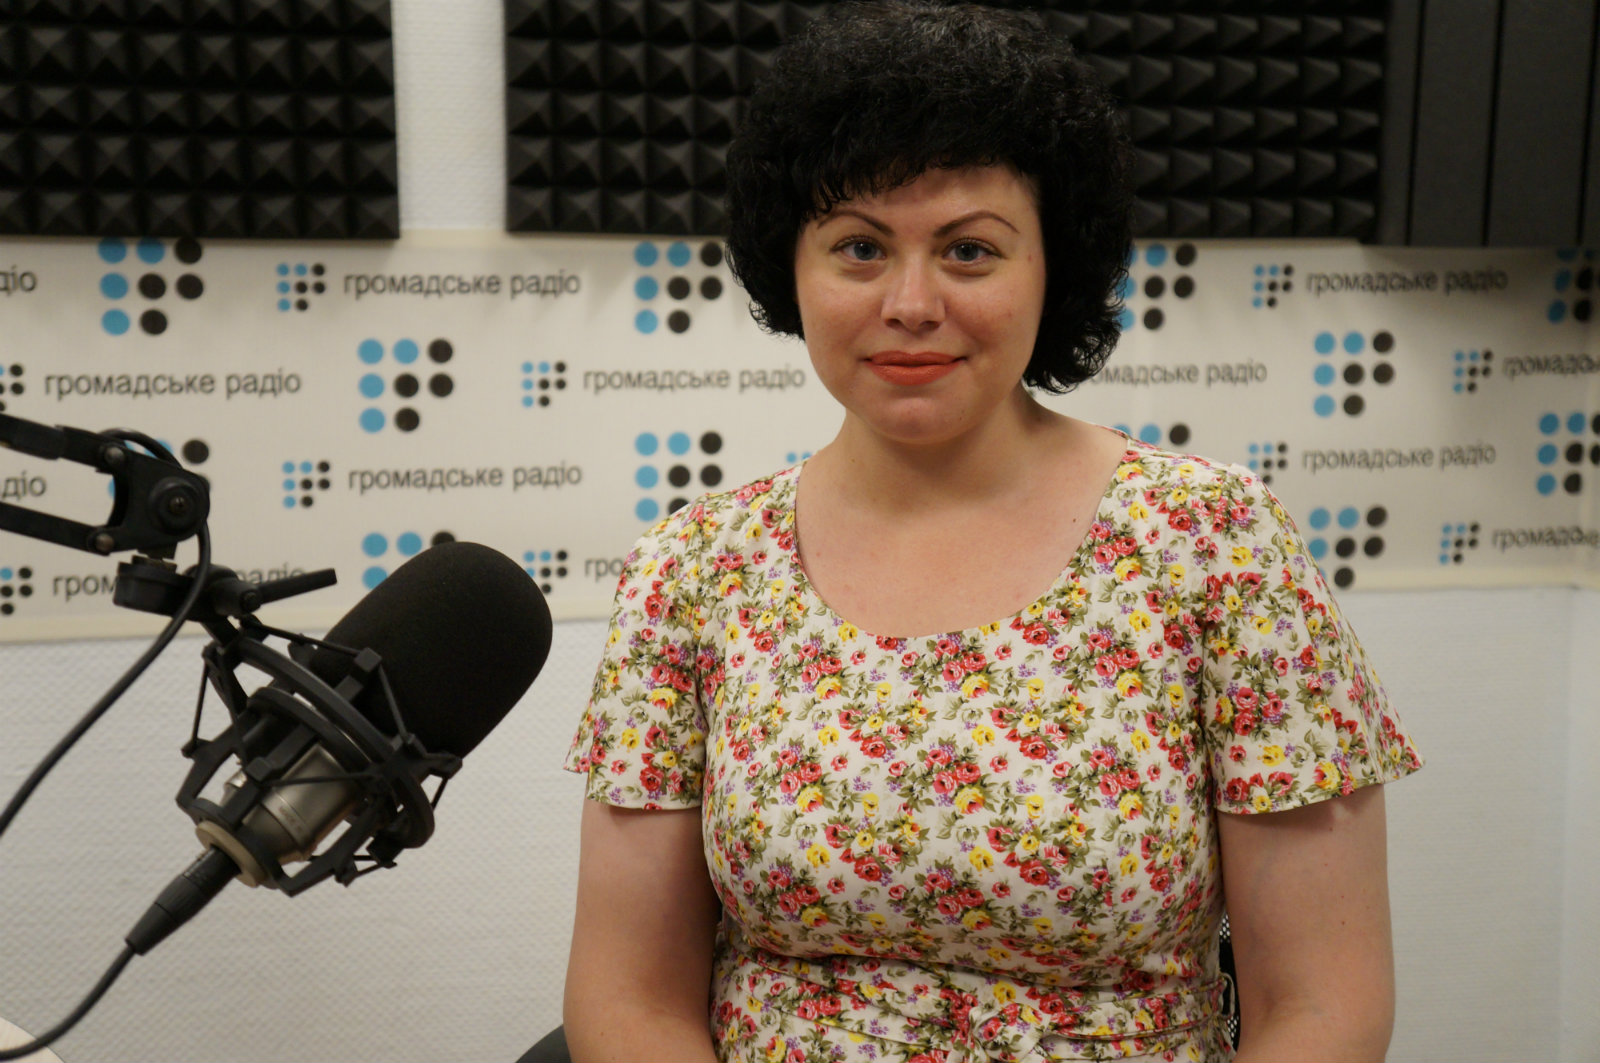 В Украине новая компания разжигания ненависти к переселенцам, - журналист